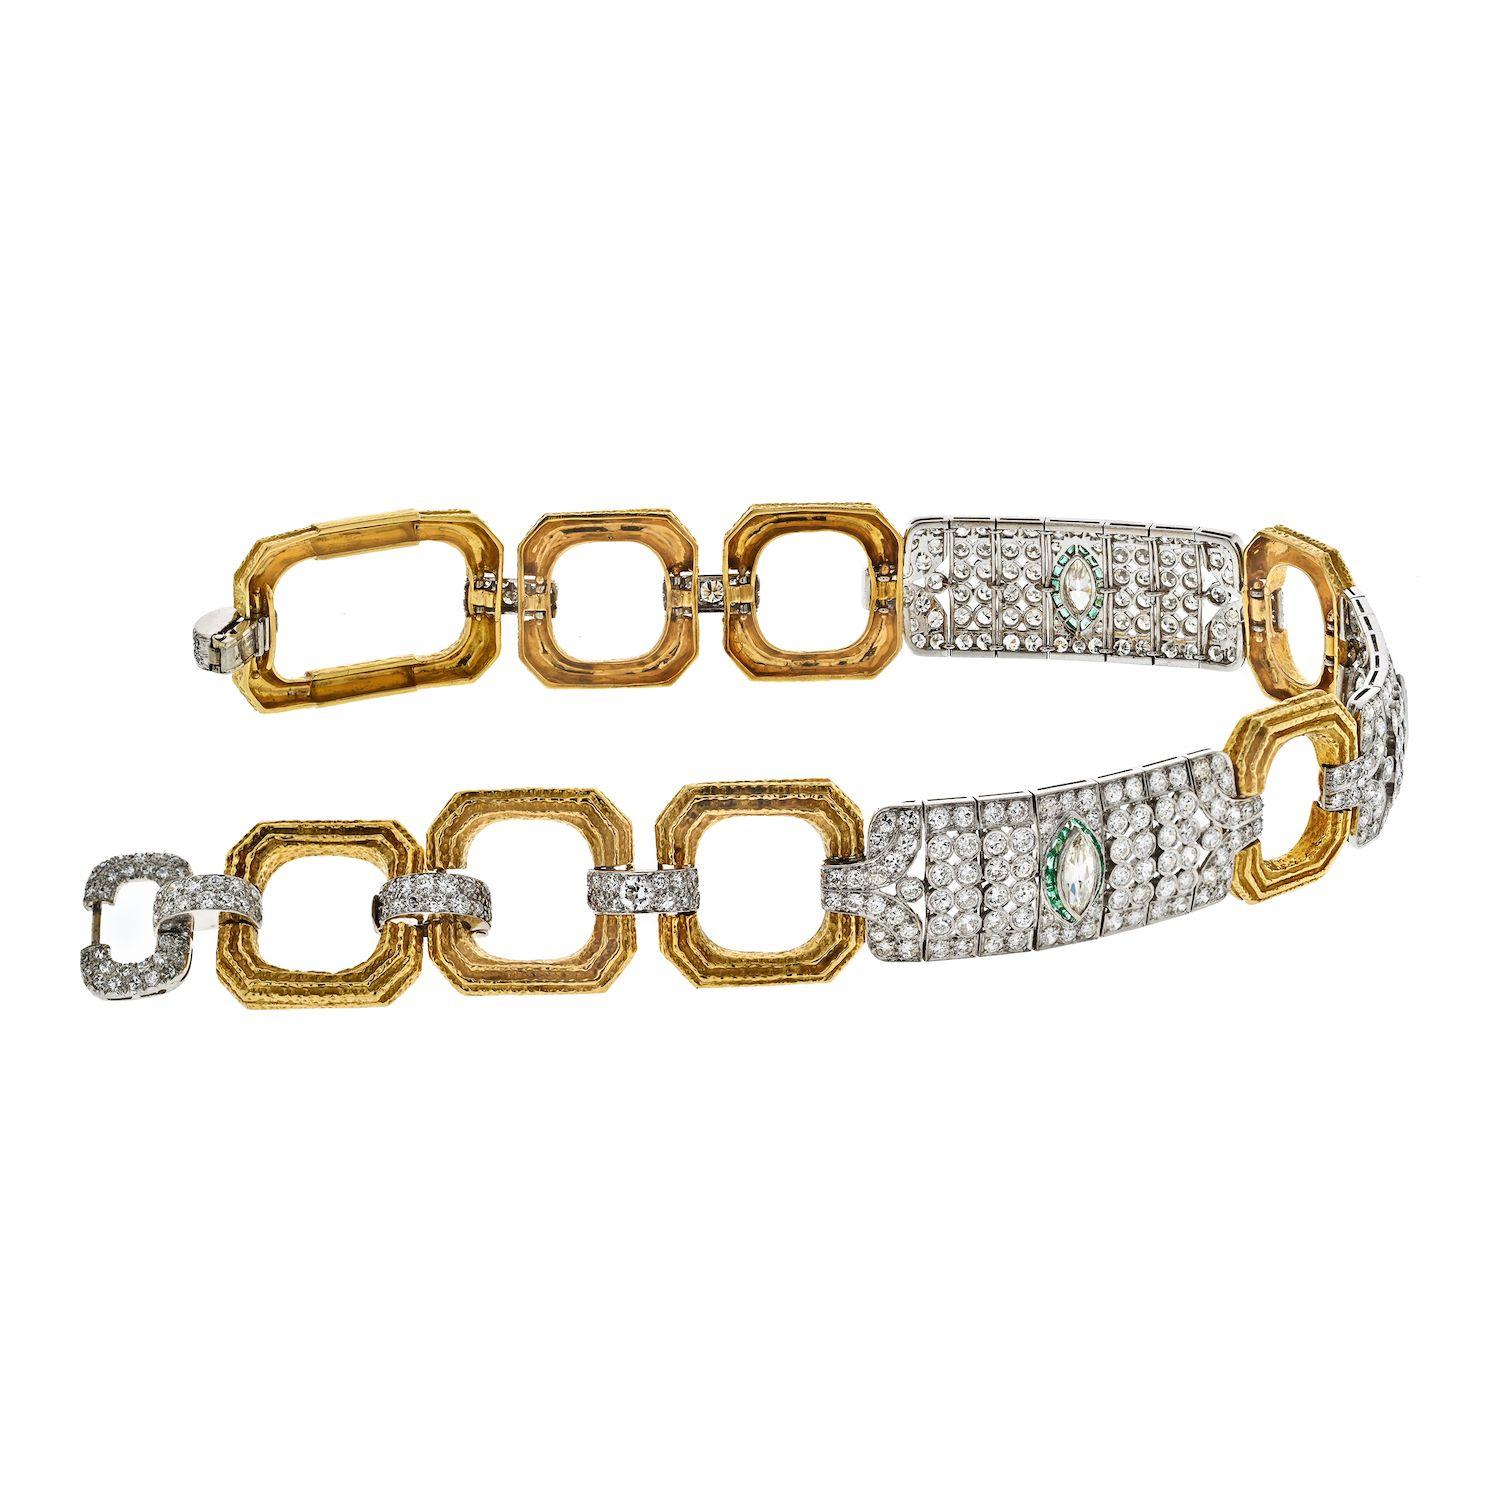 Le collier David Webb est un bijou à couper le souffle qui illustre le savoir-faire exquis et le design luxueux qui font la renommée de la marque. Réalisé dans une combinaison de platine et d'or, ce collier est orné de diamants ronds sur toute sa